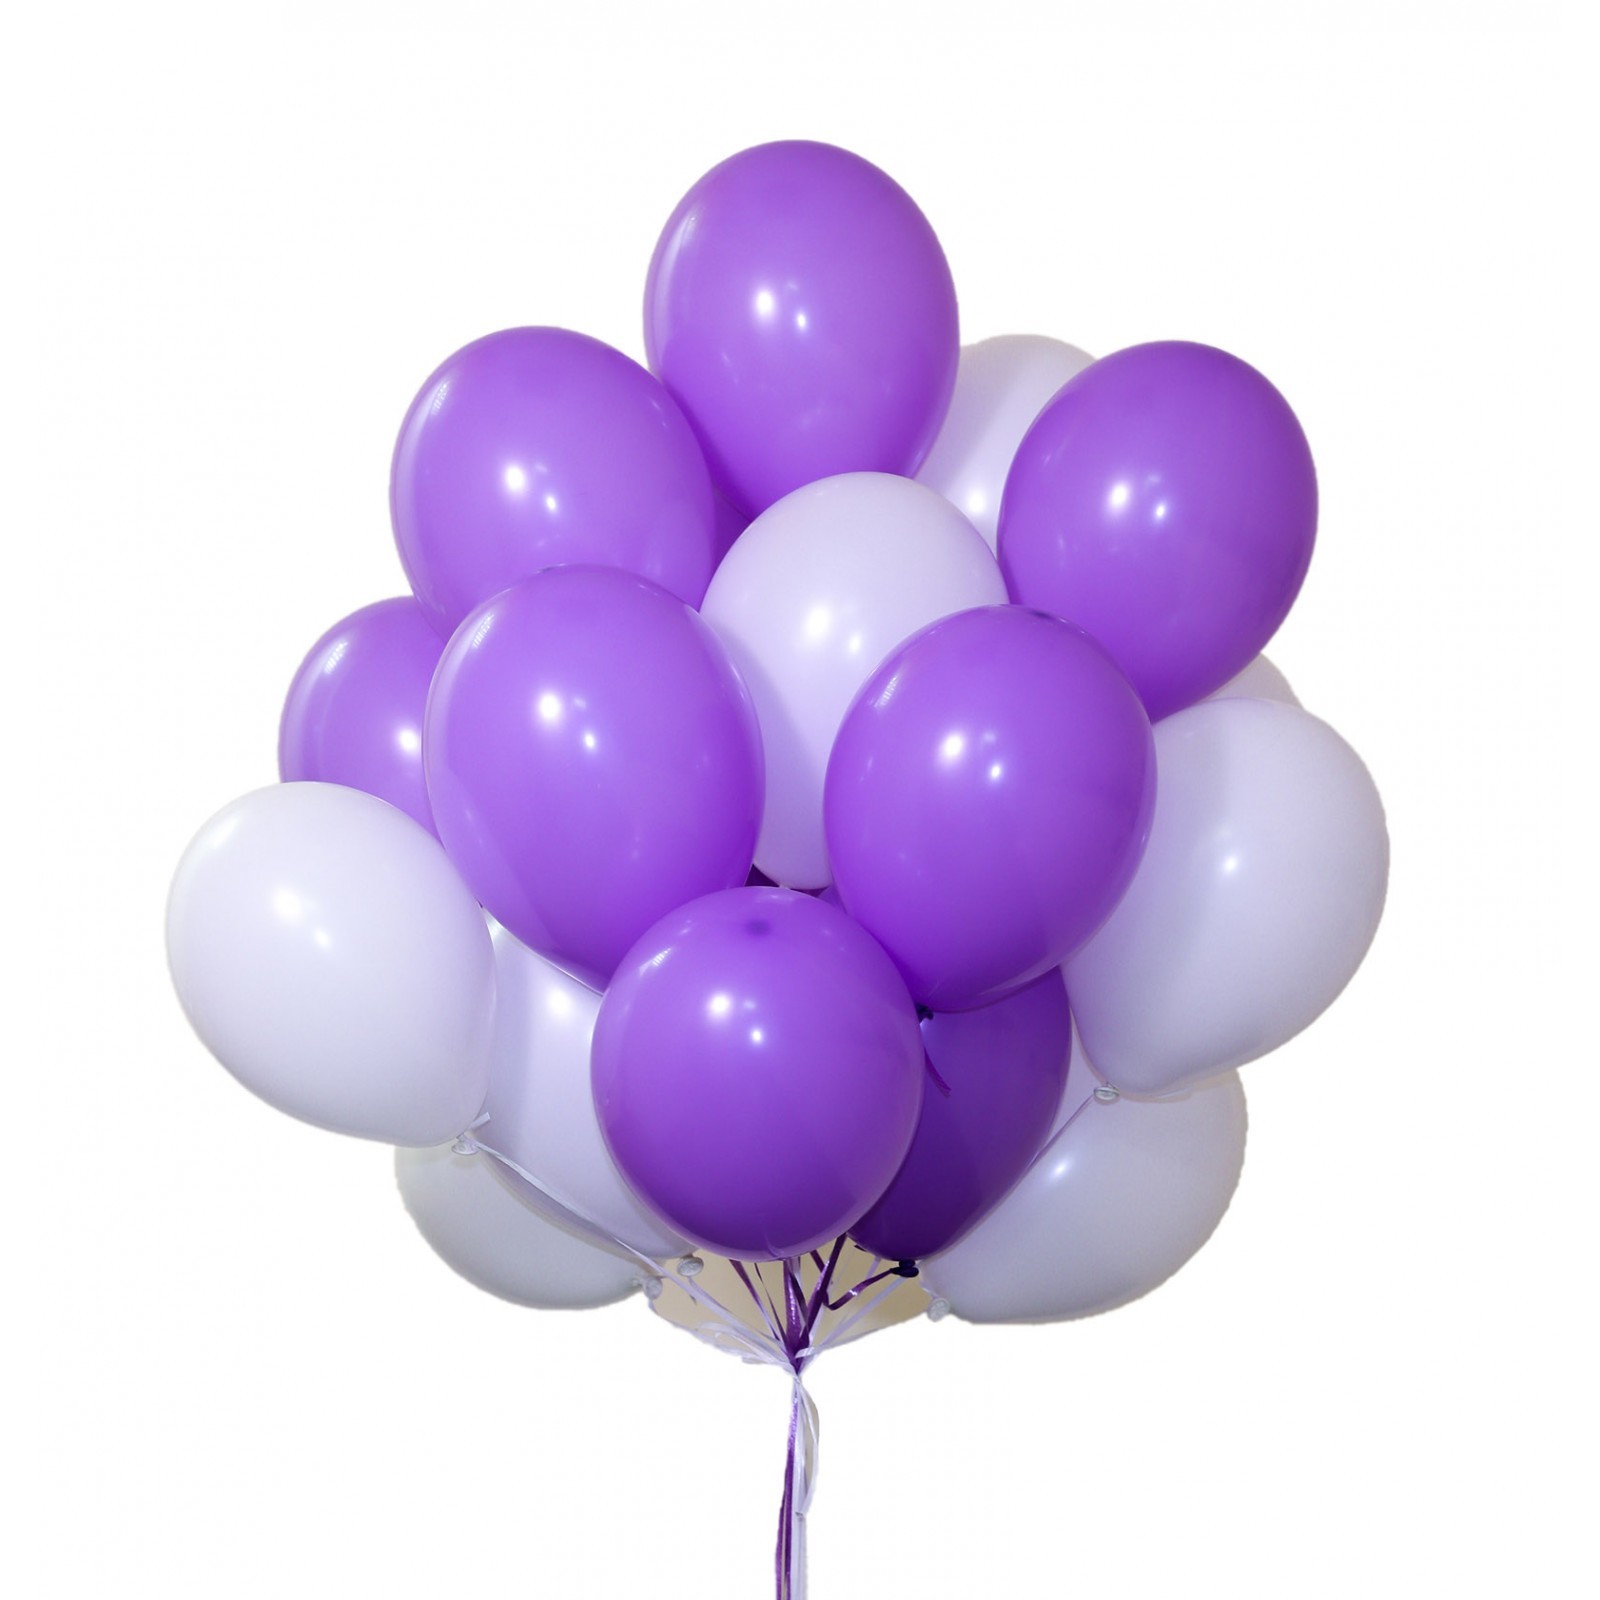 Клин шаров. Фиолетовые шары. Воздушные шары. Воздушный шарик. Фиолетовые воздушные шары.